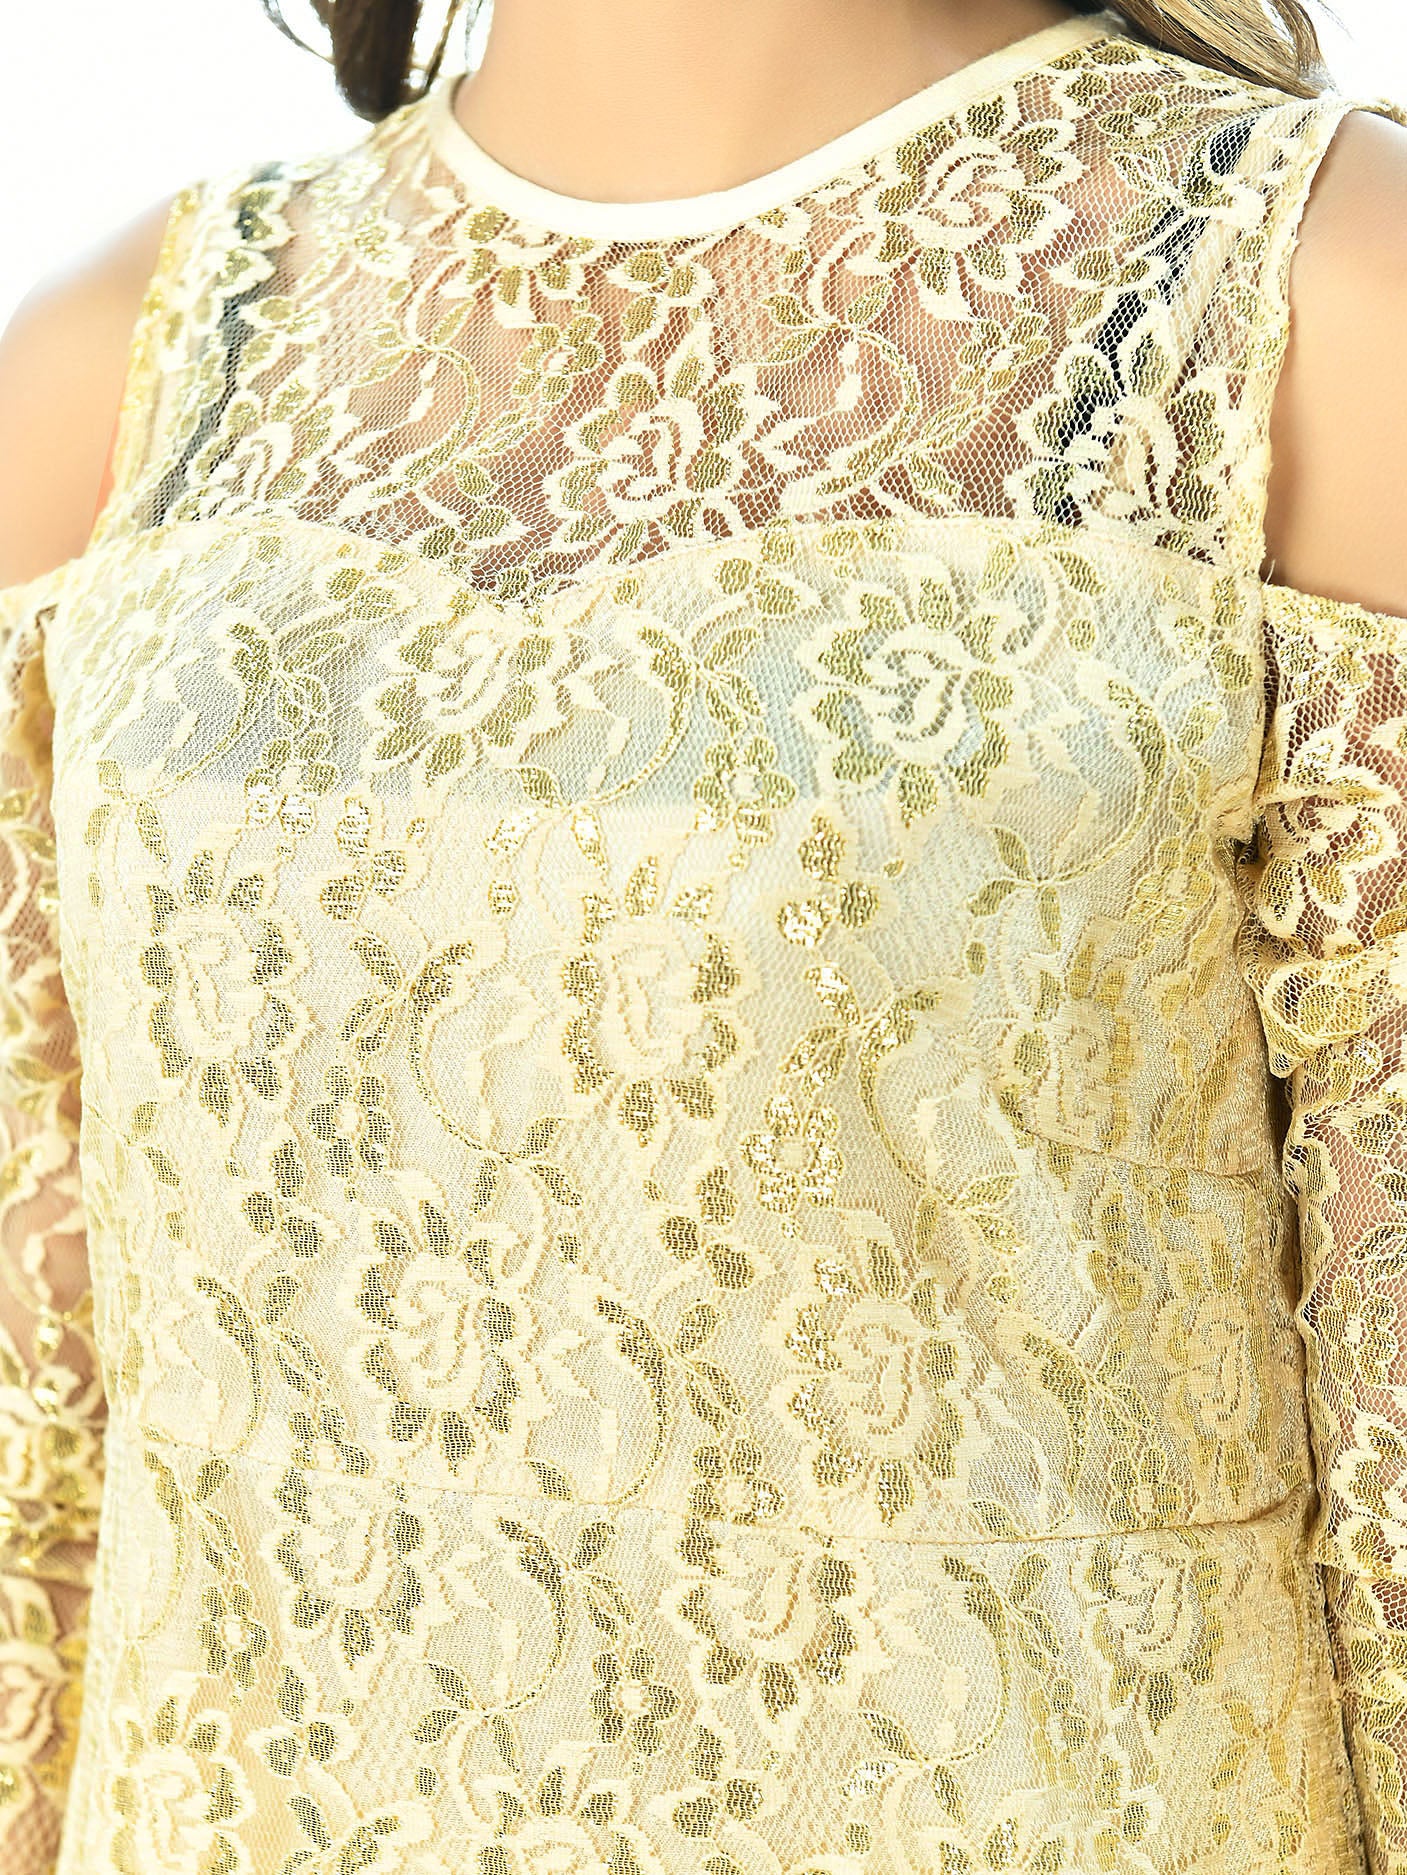 Sequined Net Dress